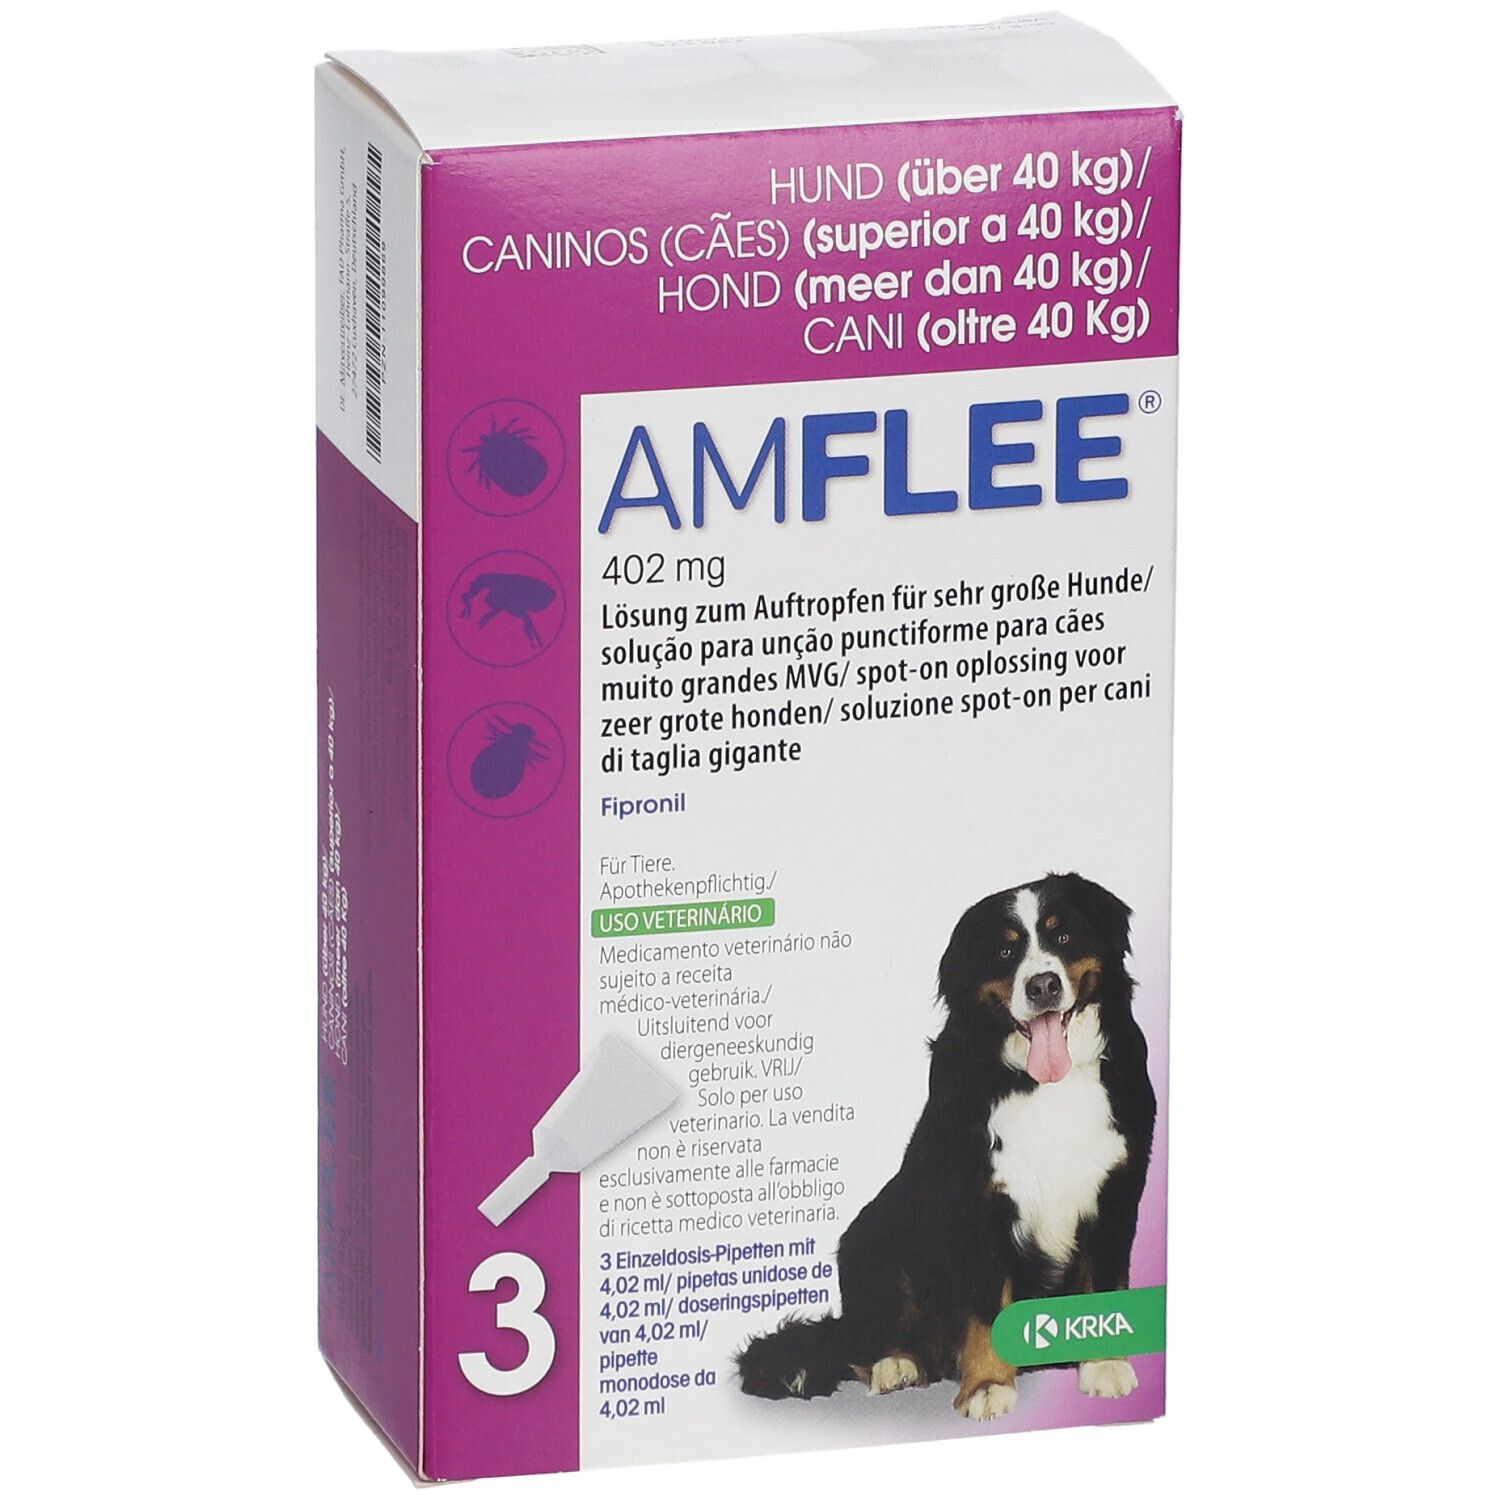 Amflee® 402 mg Lösung zum Auftropfen für Hunde